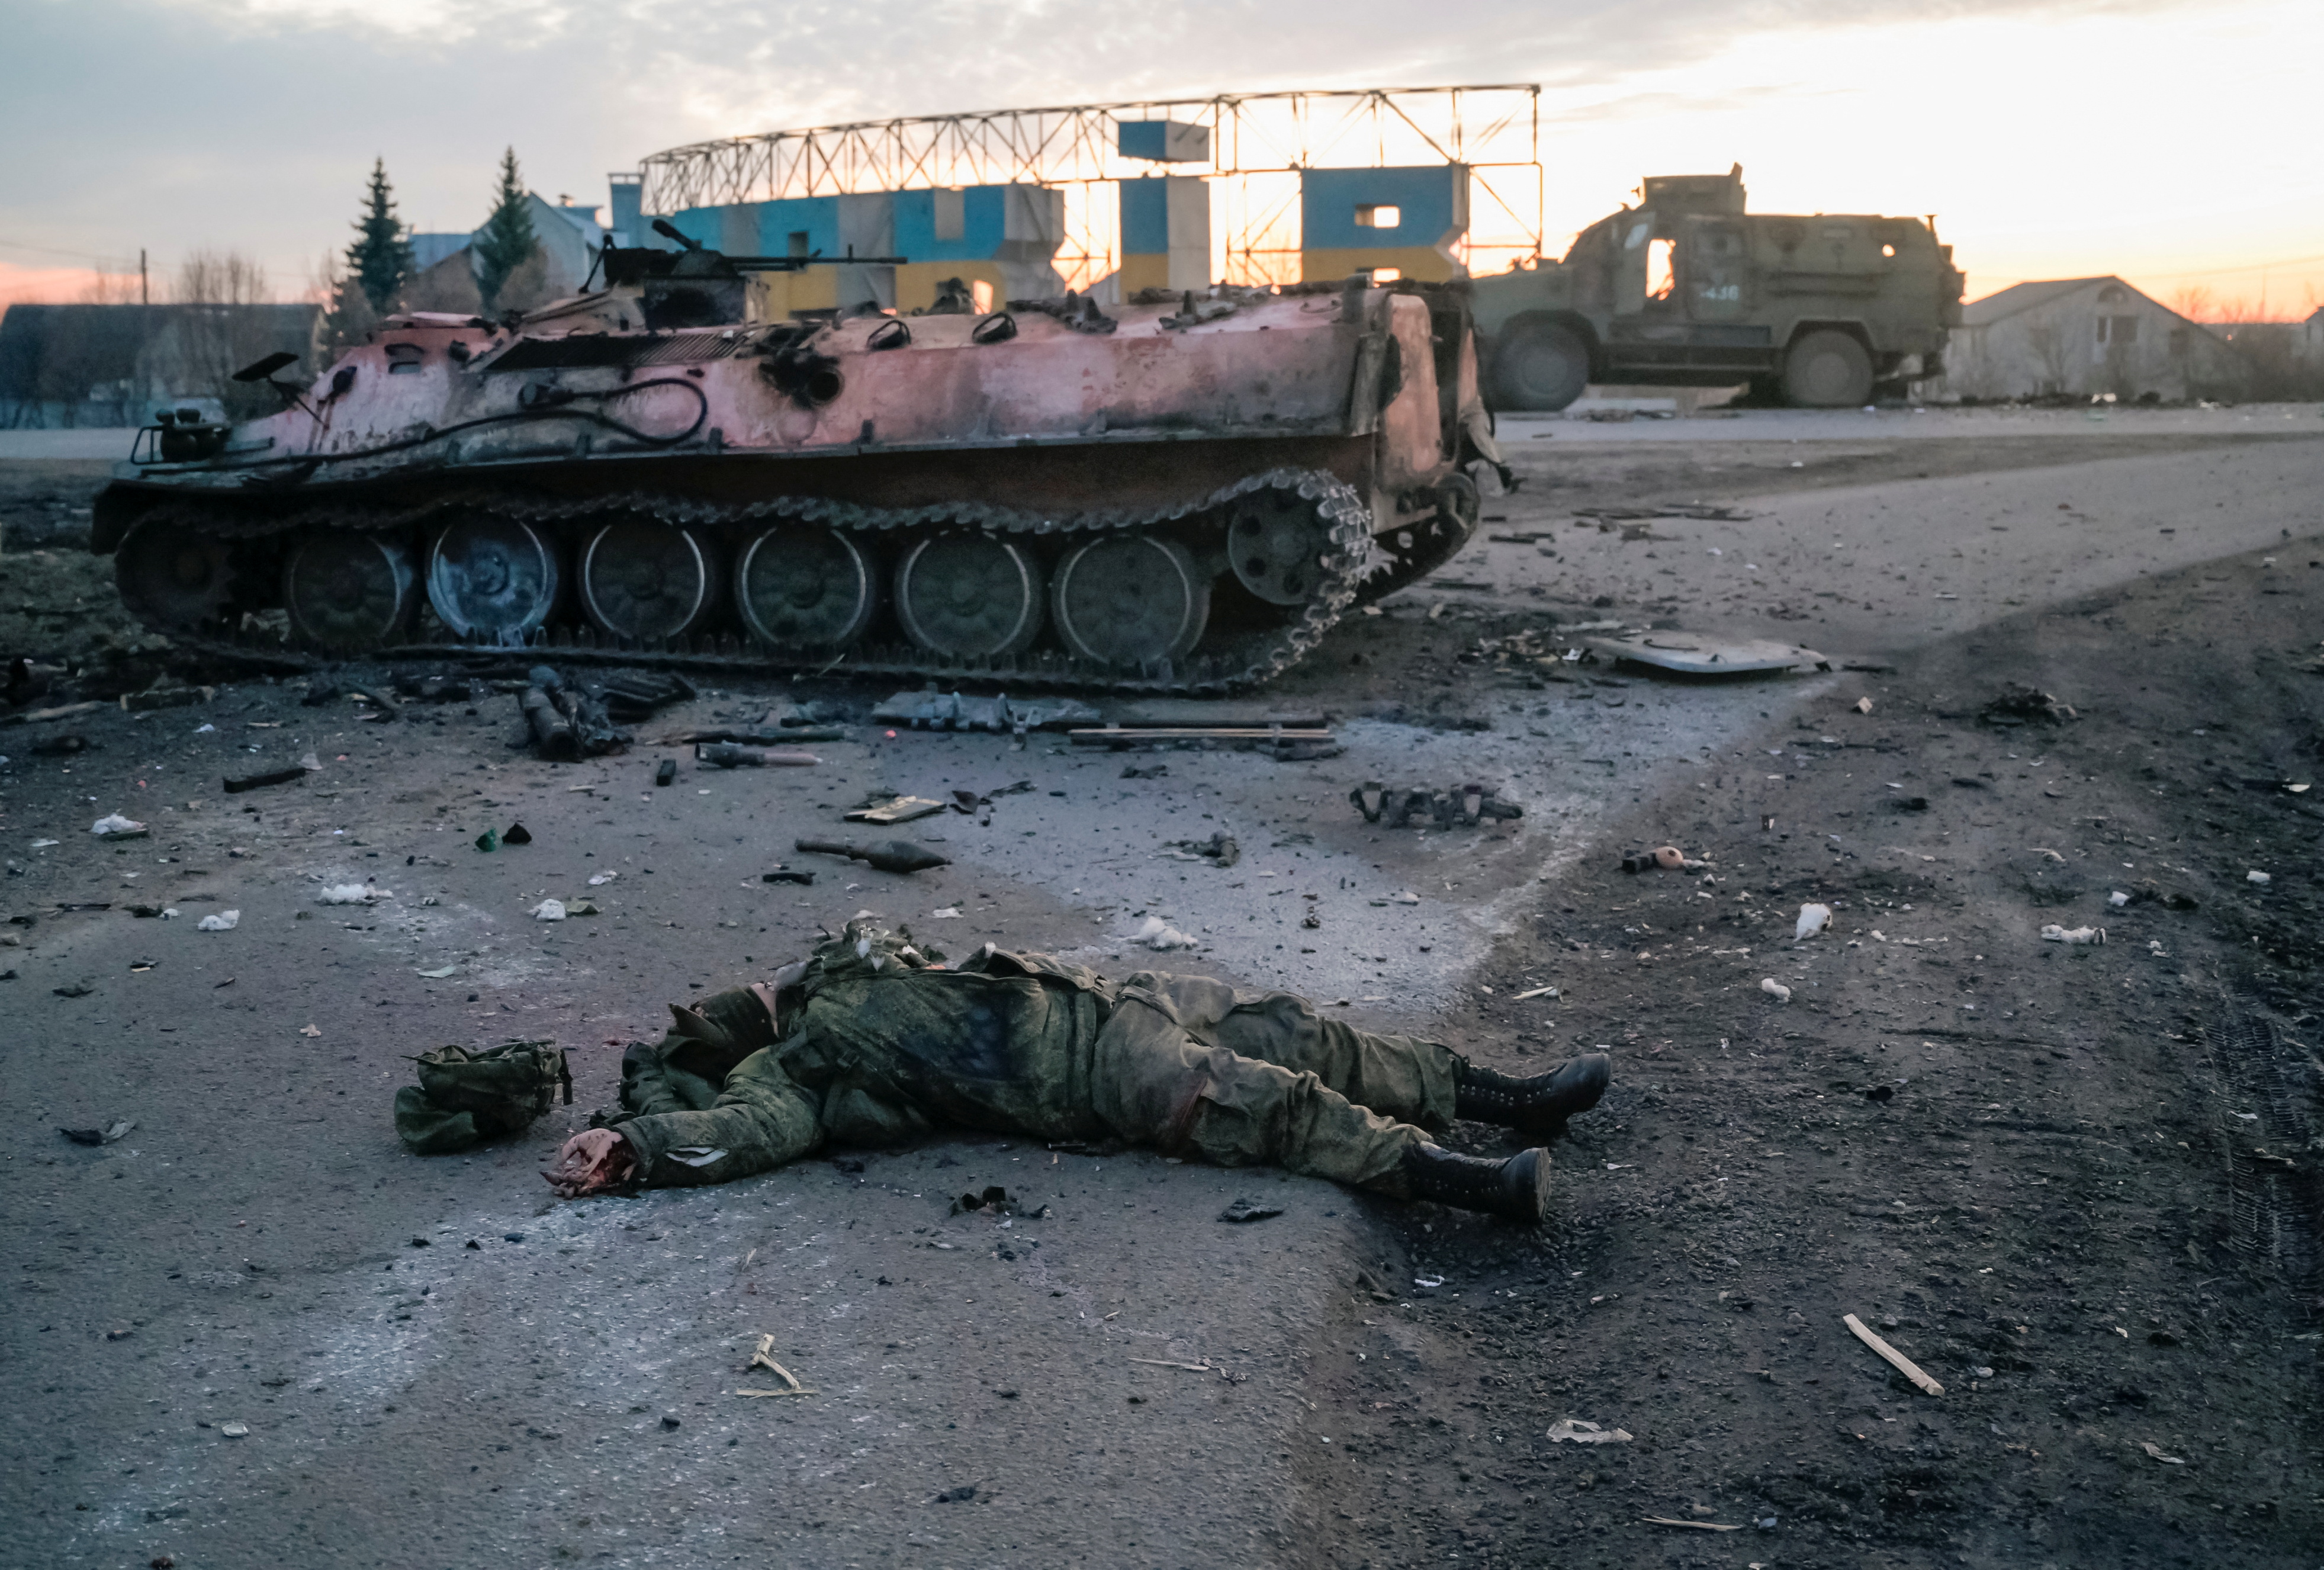 El cuerpo de un soldado, sin insignias, que según los militares ucranianos es del ejército ruso, yace en una carretera a las afueras de la ciudad de Kharkiv, Ucrania 24 de febrero de 2022. REUTERS/Maksim Levin